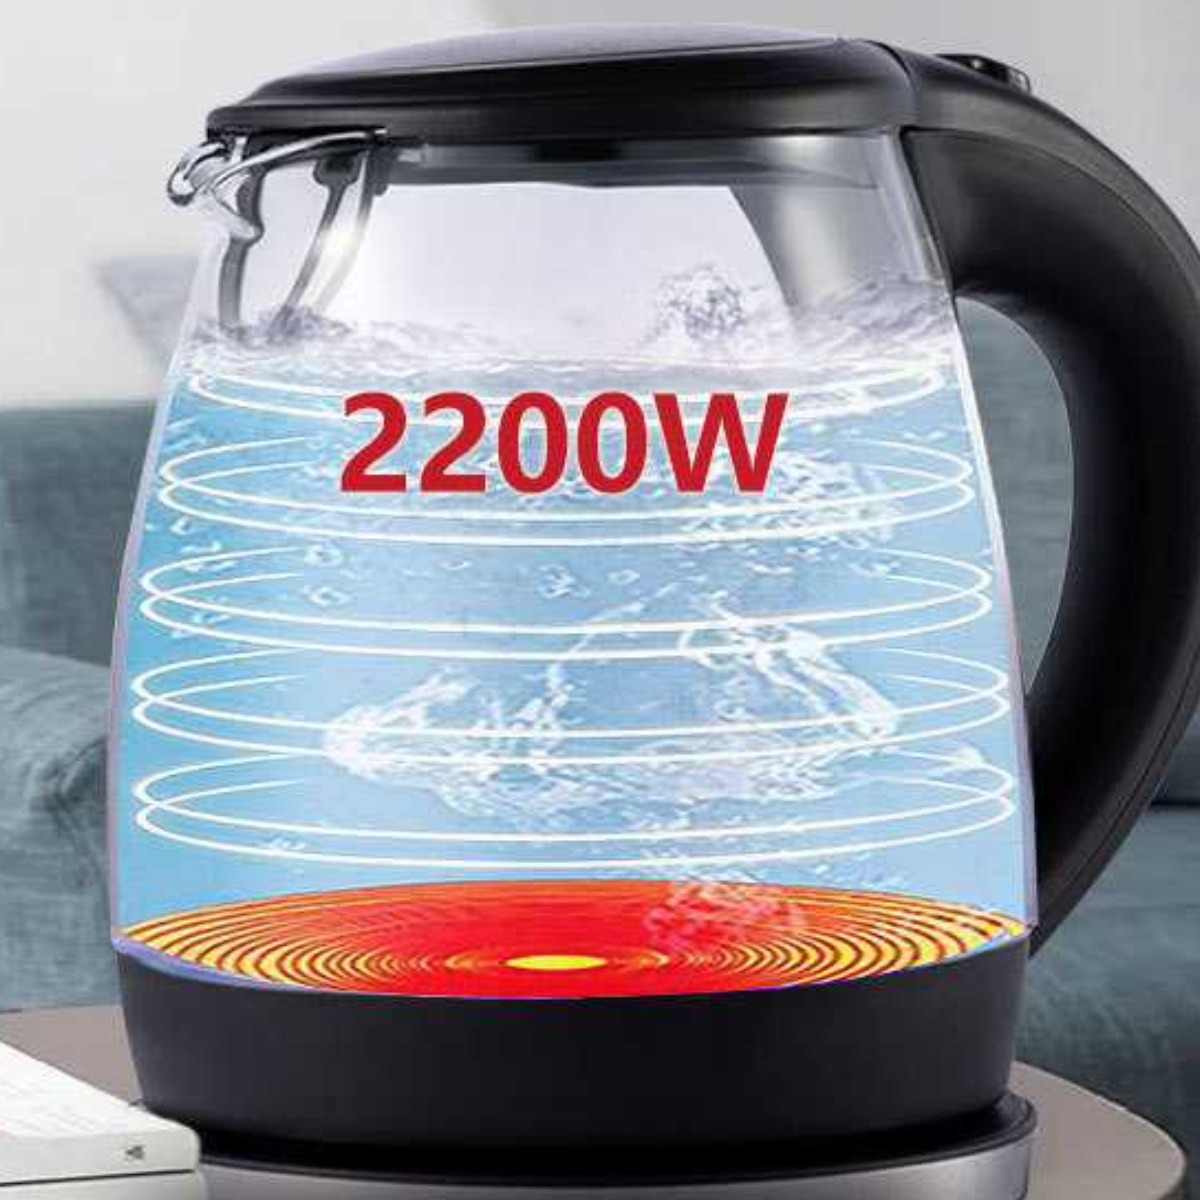 UWOT Blaulicht-Wasserkocher automatischer Glaskessel Schwarz mit 1L Abschaltung: Wasserkocher